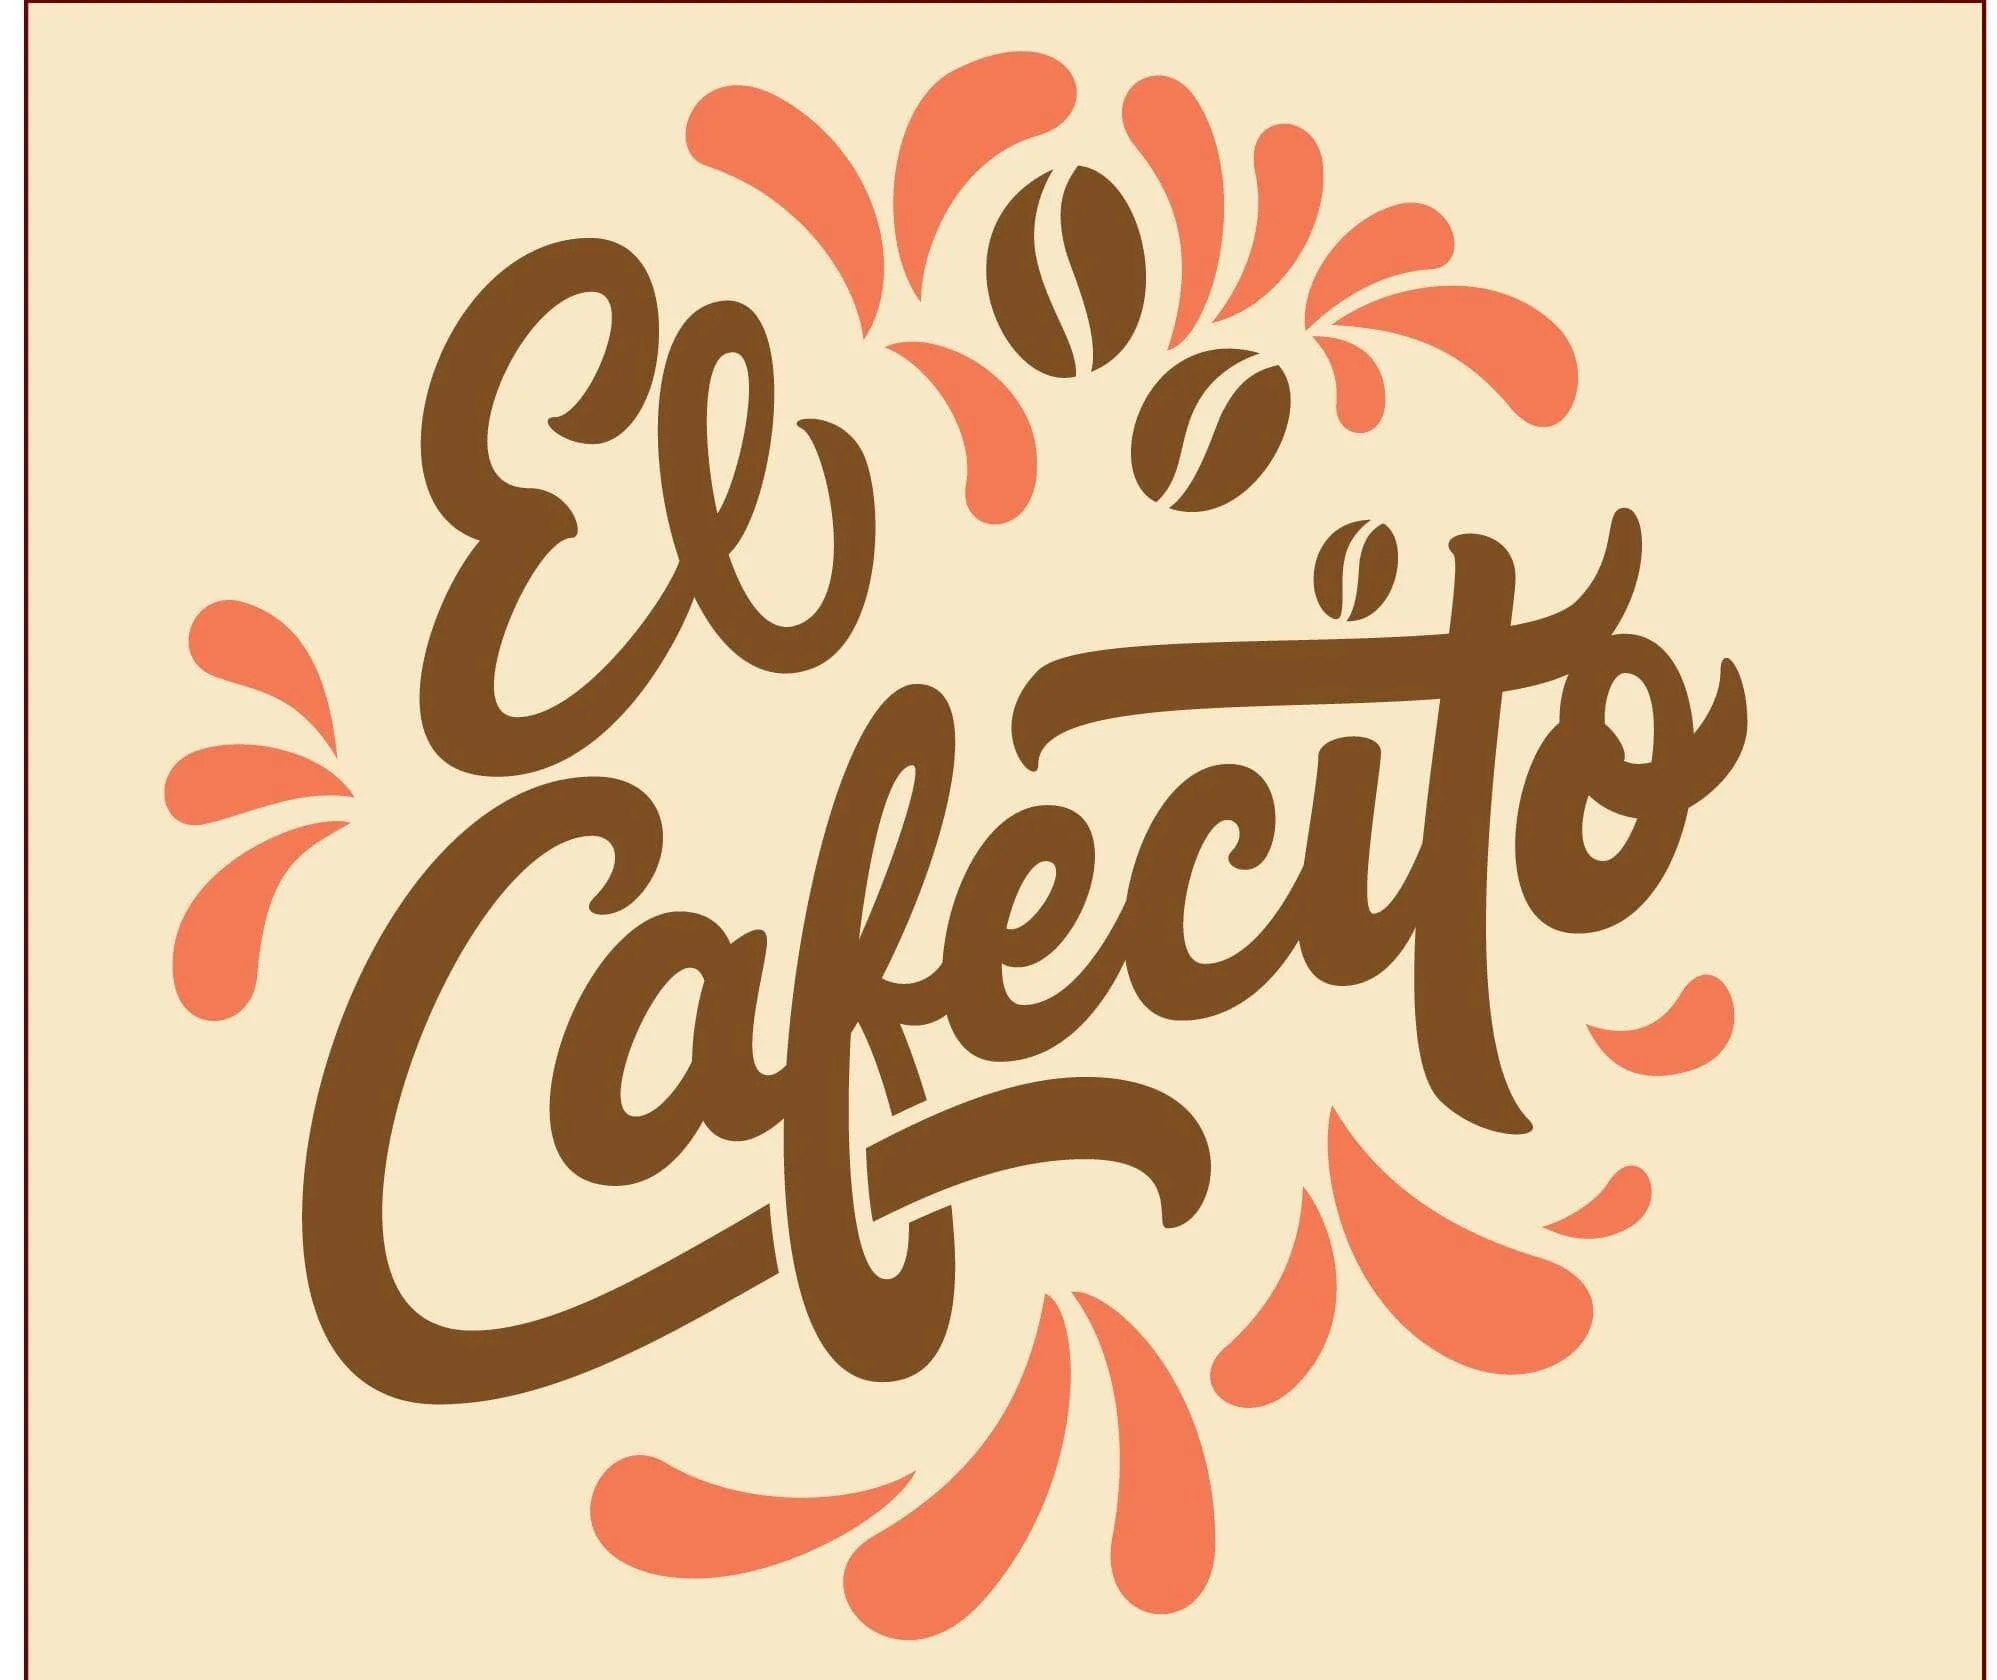 Restaurantes-el-cafecito-17475